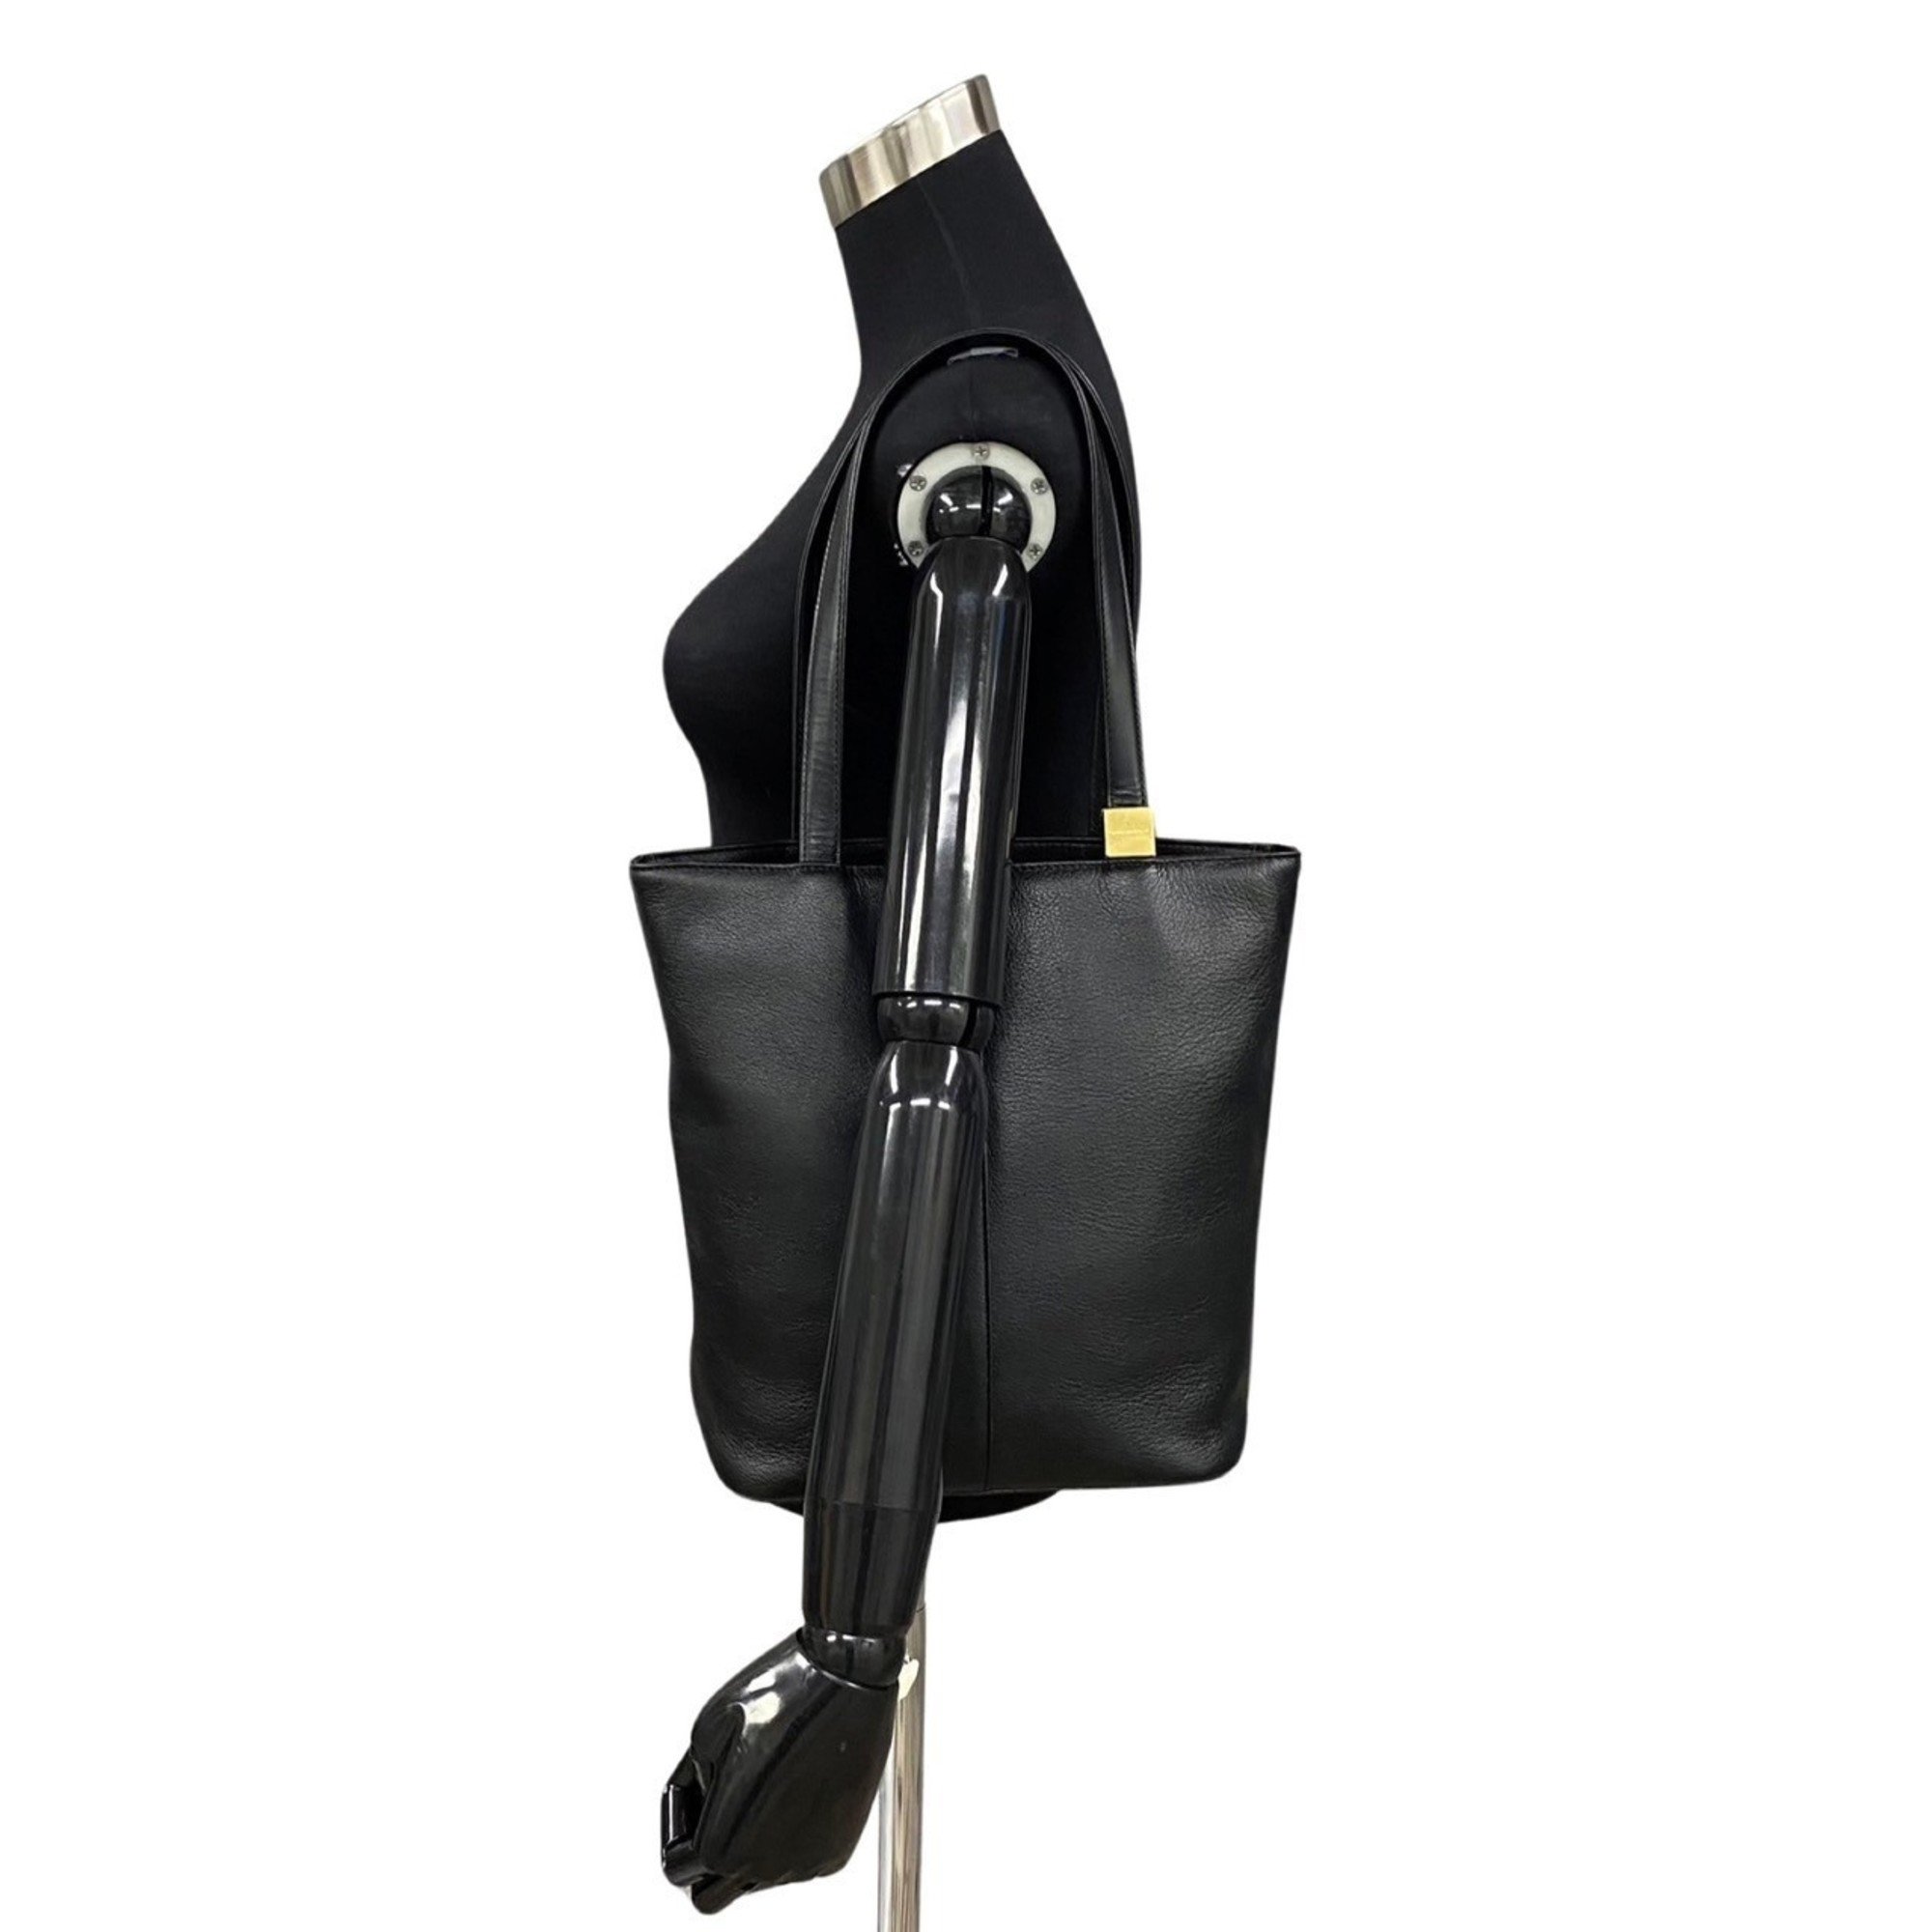 BURBERRY Nova check metal fittings leather handbag tote bag black 88071